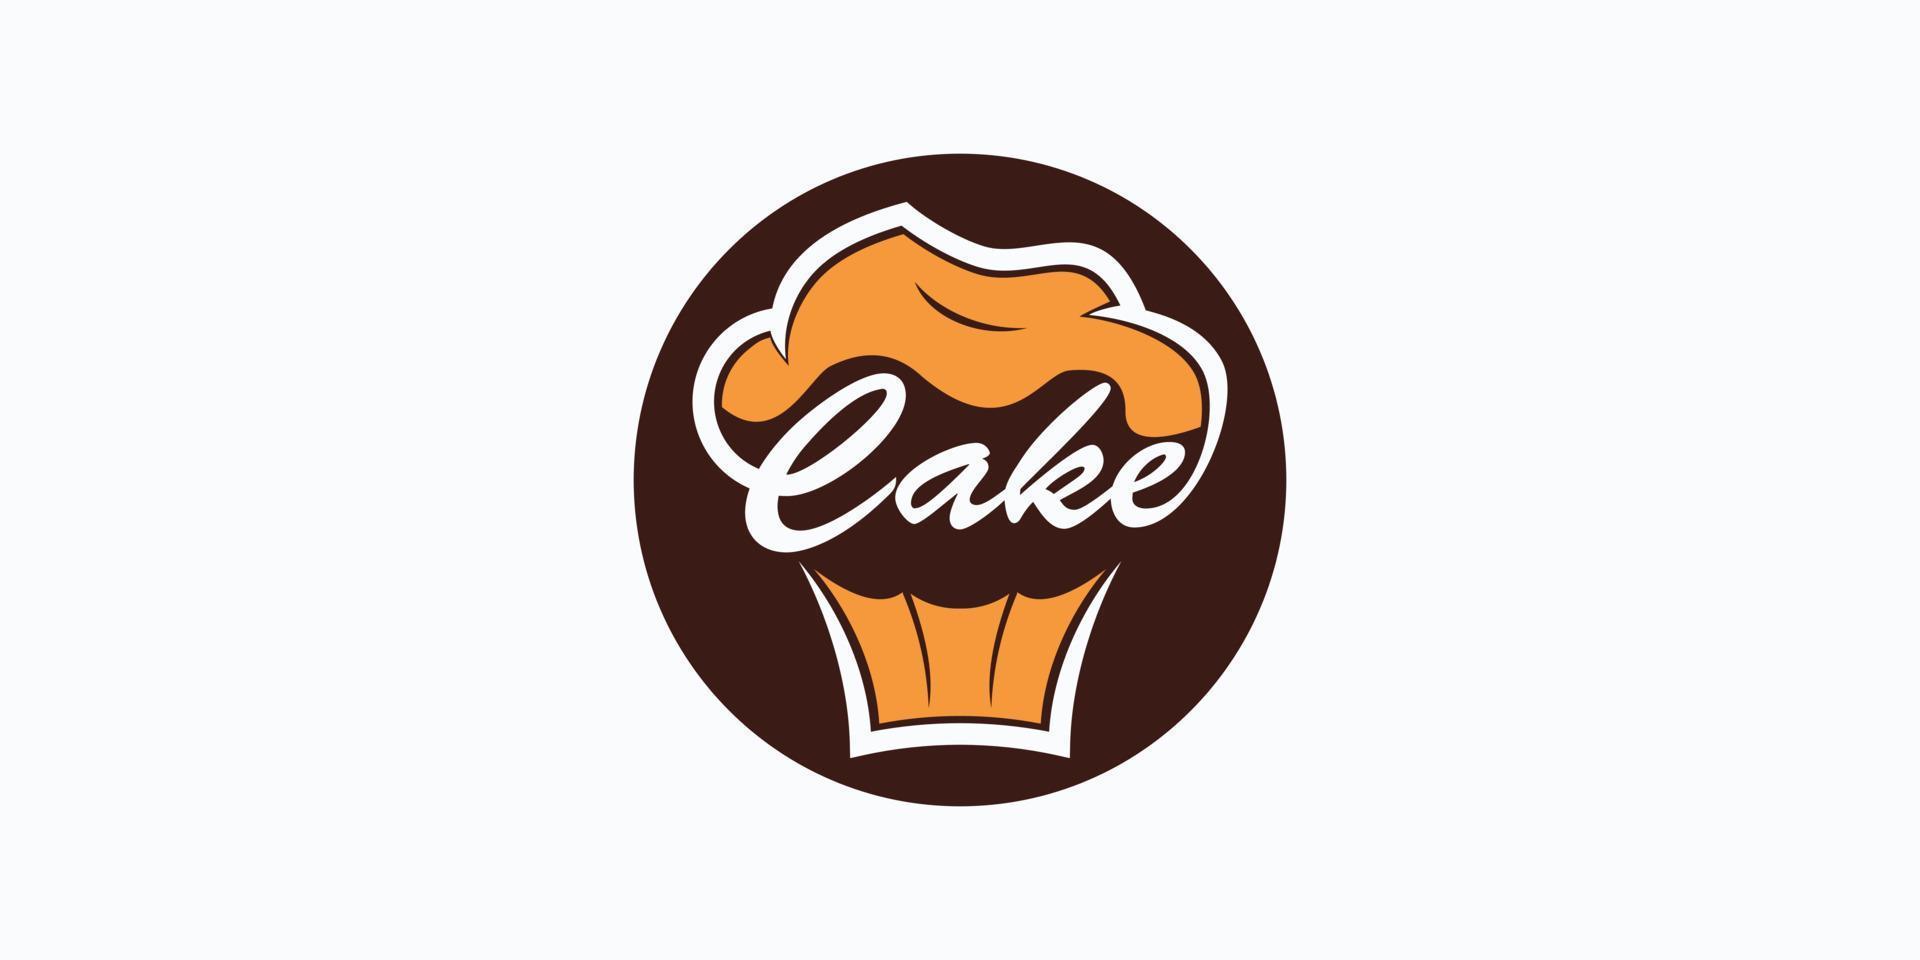 vecteur de conception de logo de gâteau avec concept créatif pour votre pâtisserie